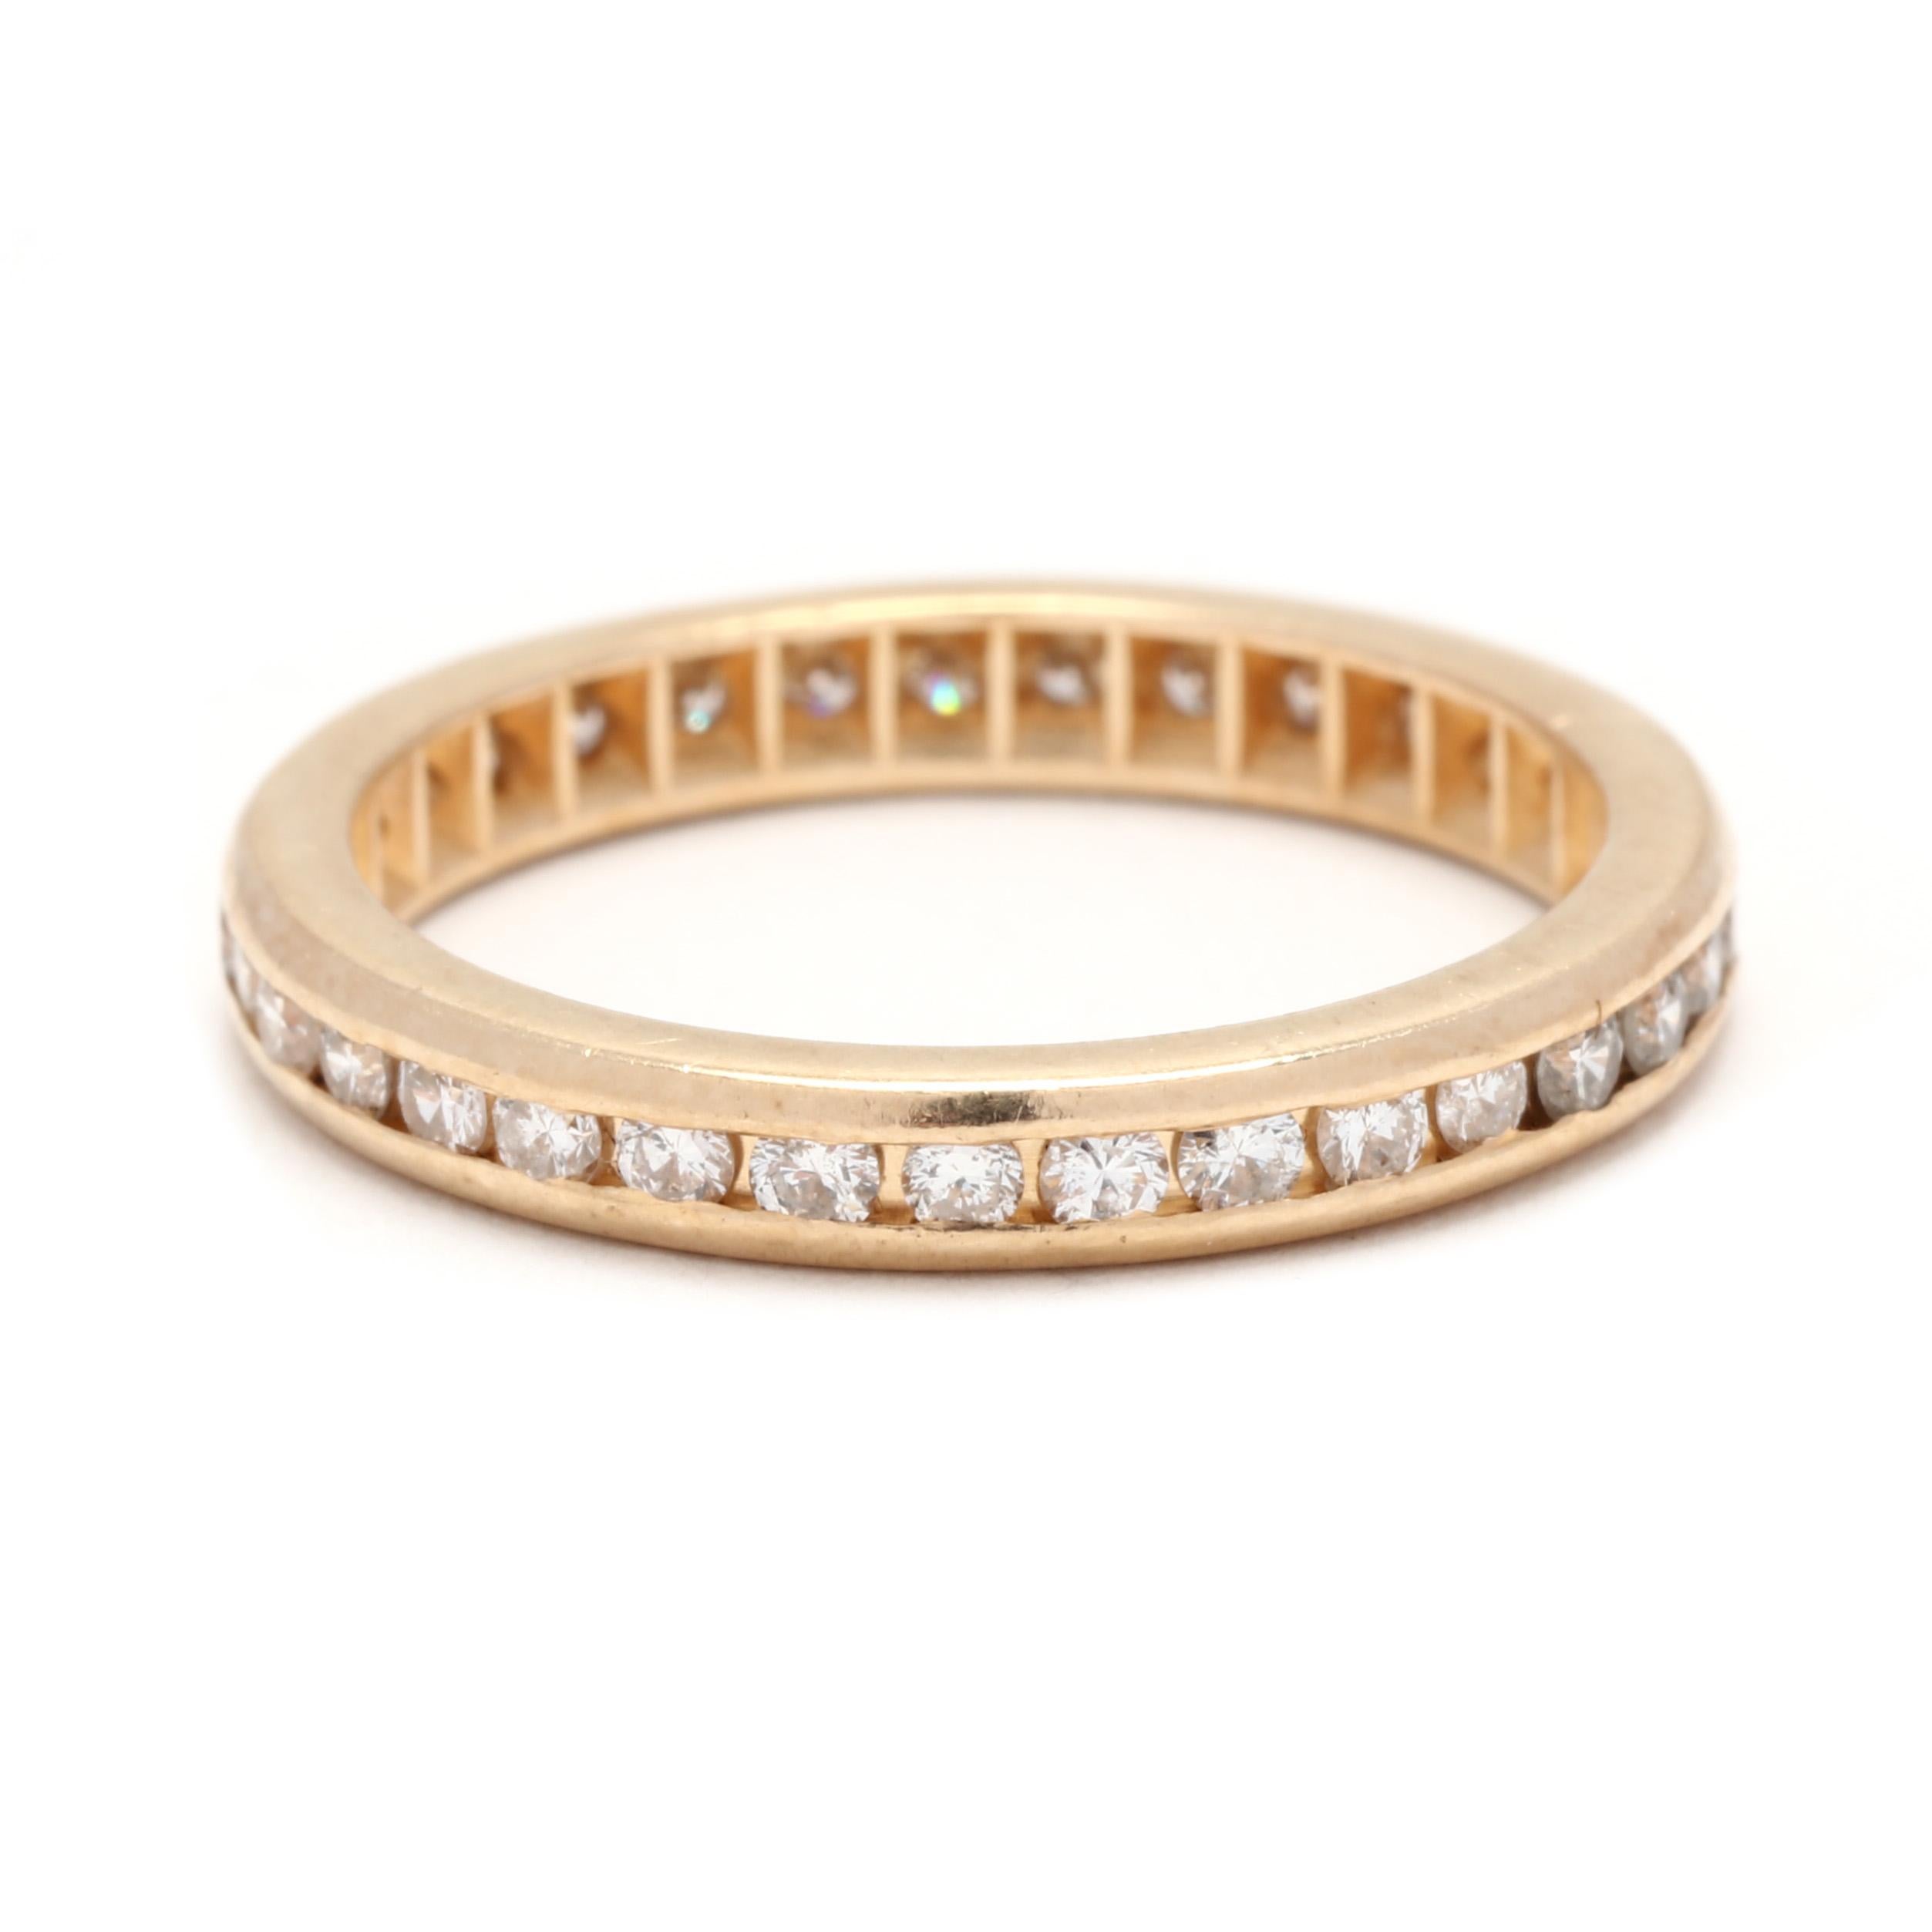 Une alliance d'éternité vintage en or jaune 14 carats avec des diamants en chaîne. Ce bracelet d'éternité empilable présente un design d'éternité fin avec des diamants ronds de taille brillant en serti clos pesant environ 0,50 carats au